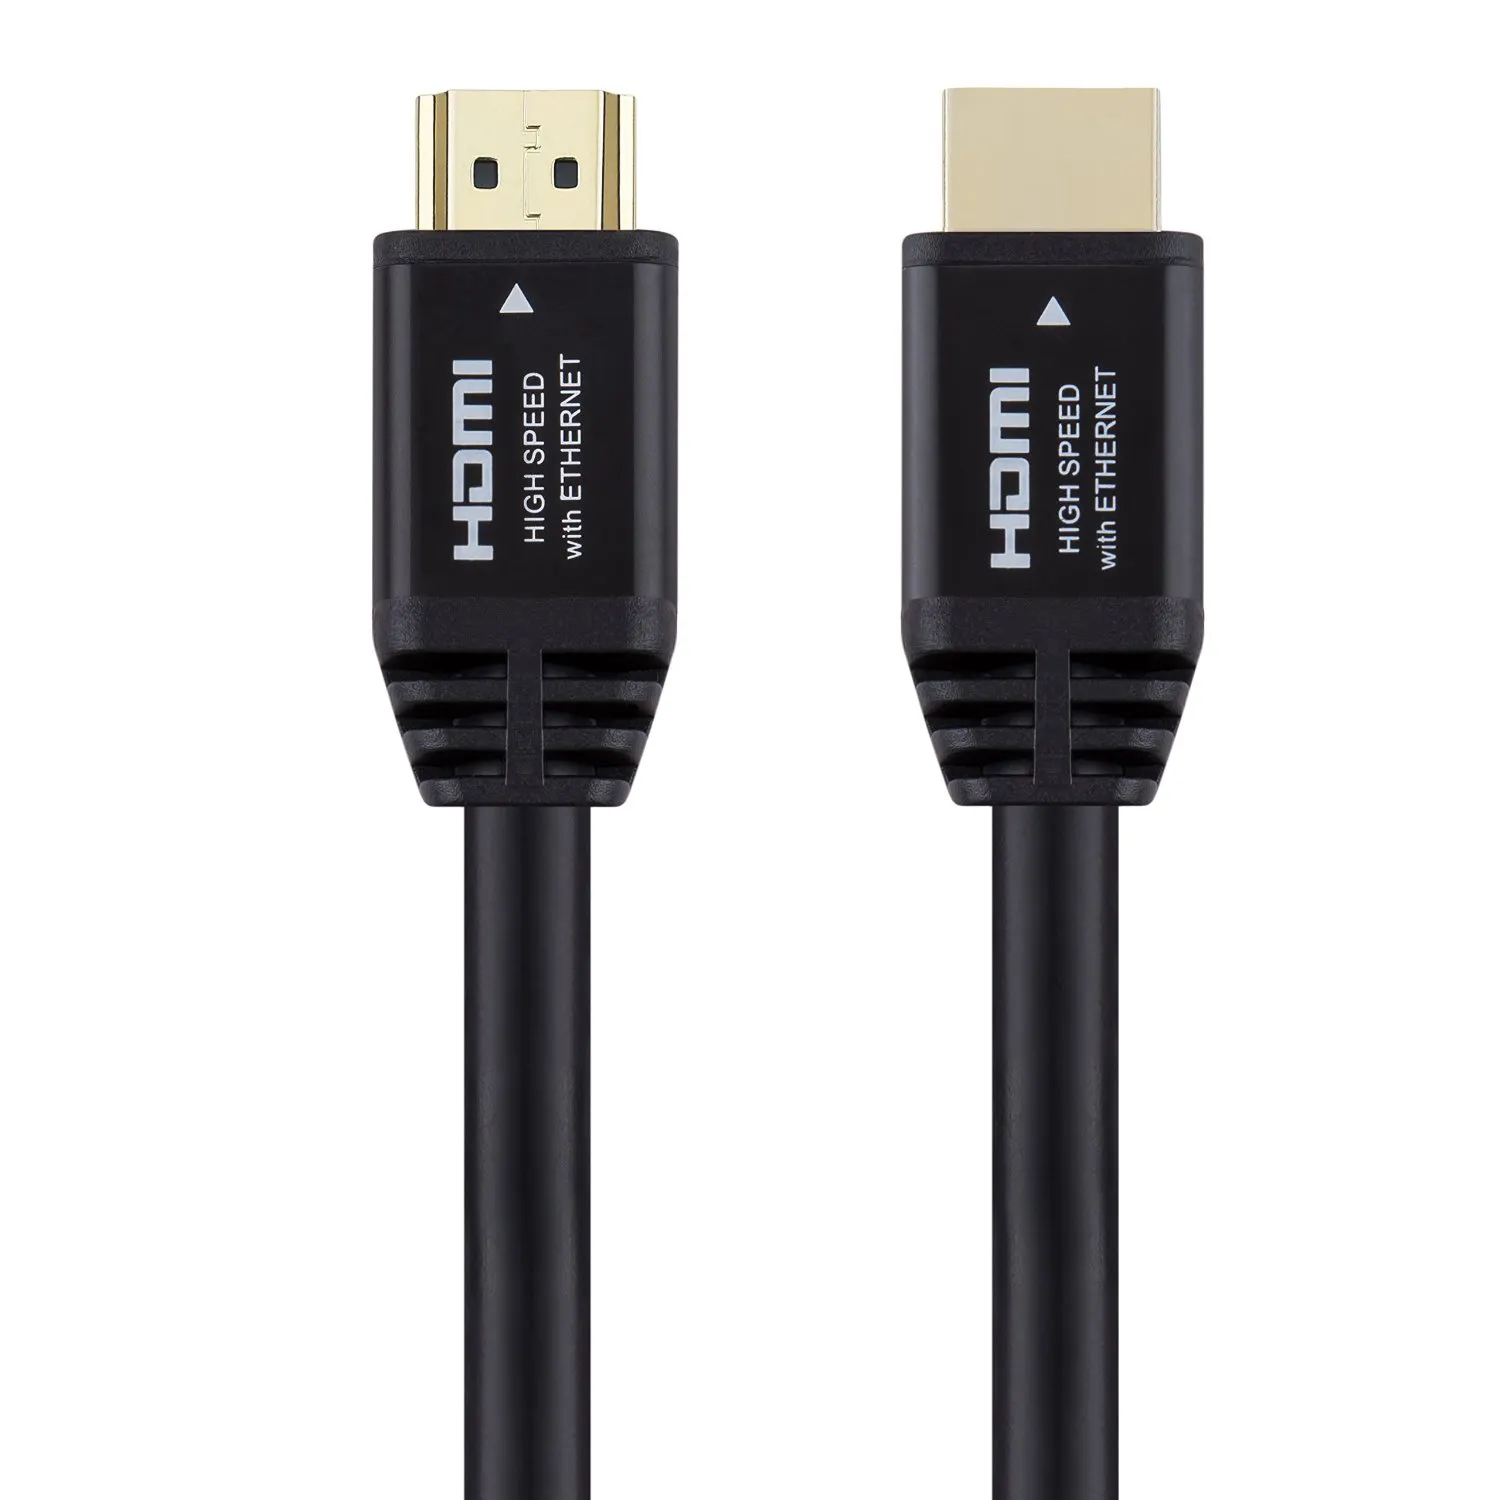 Hdmi kablosu sıcak satış 1M 2160p yüksek çözünürlüklü siyah 4k 60hz 18gbps de Hdtv için ps3/4 HDMI Kabel